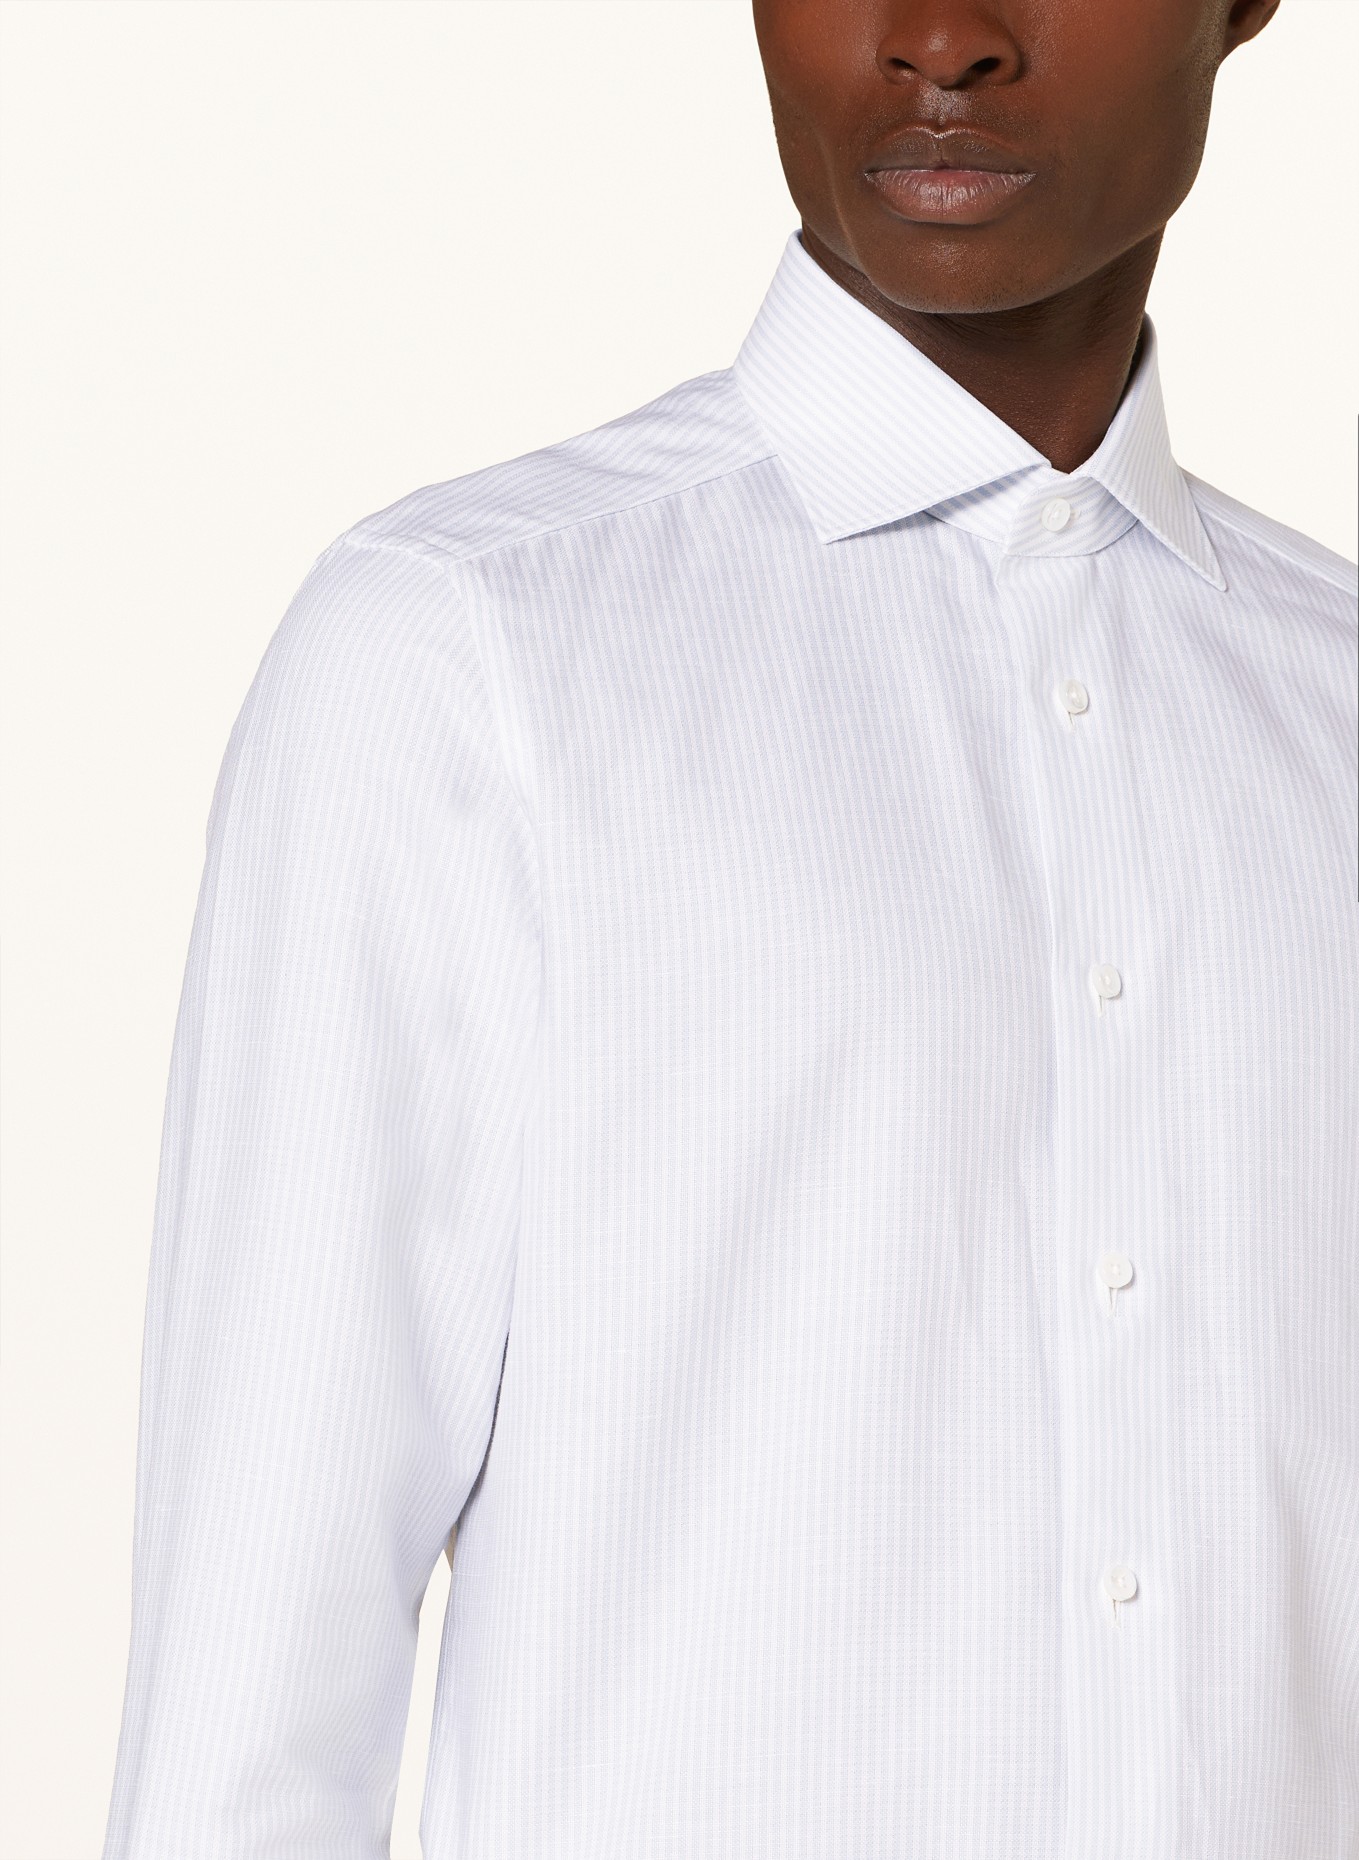 ZEGNA Shirt regular fit, Color: LIGHT BLUE/ WHITE (Image 4)